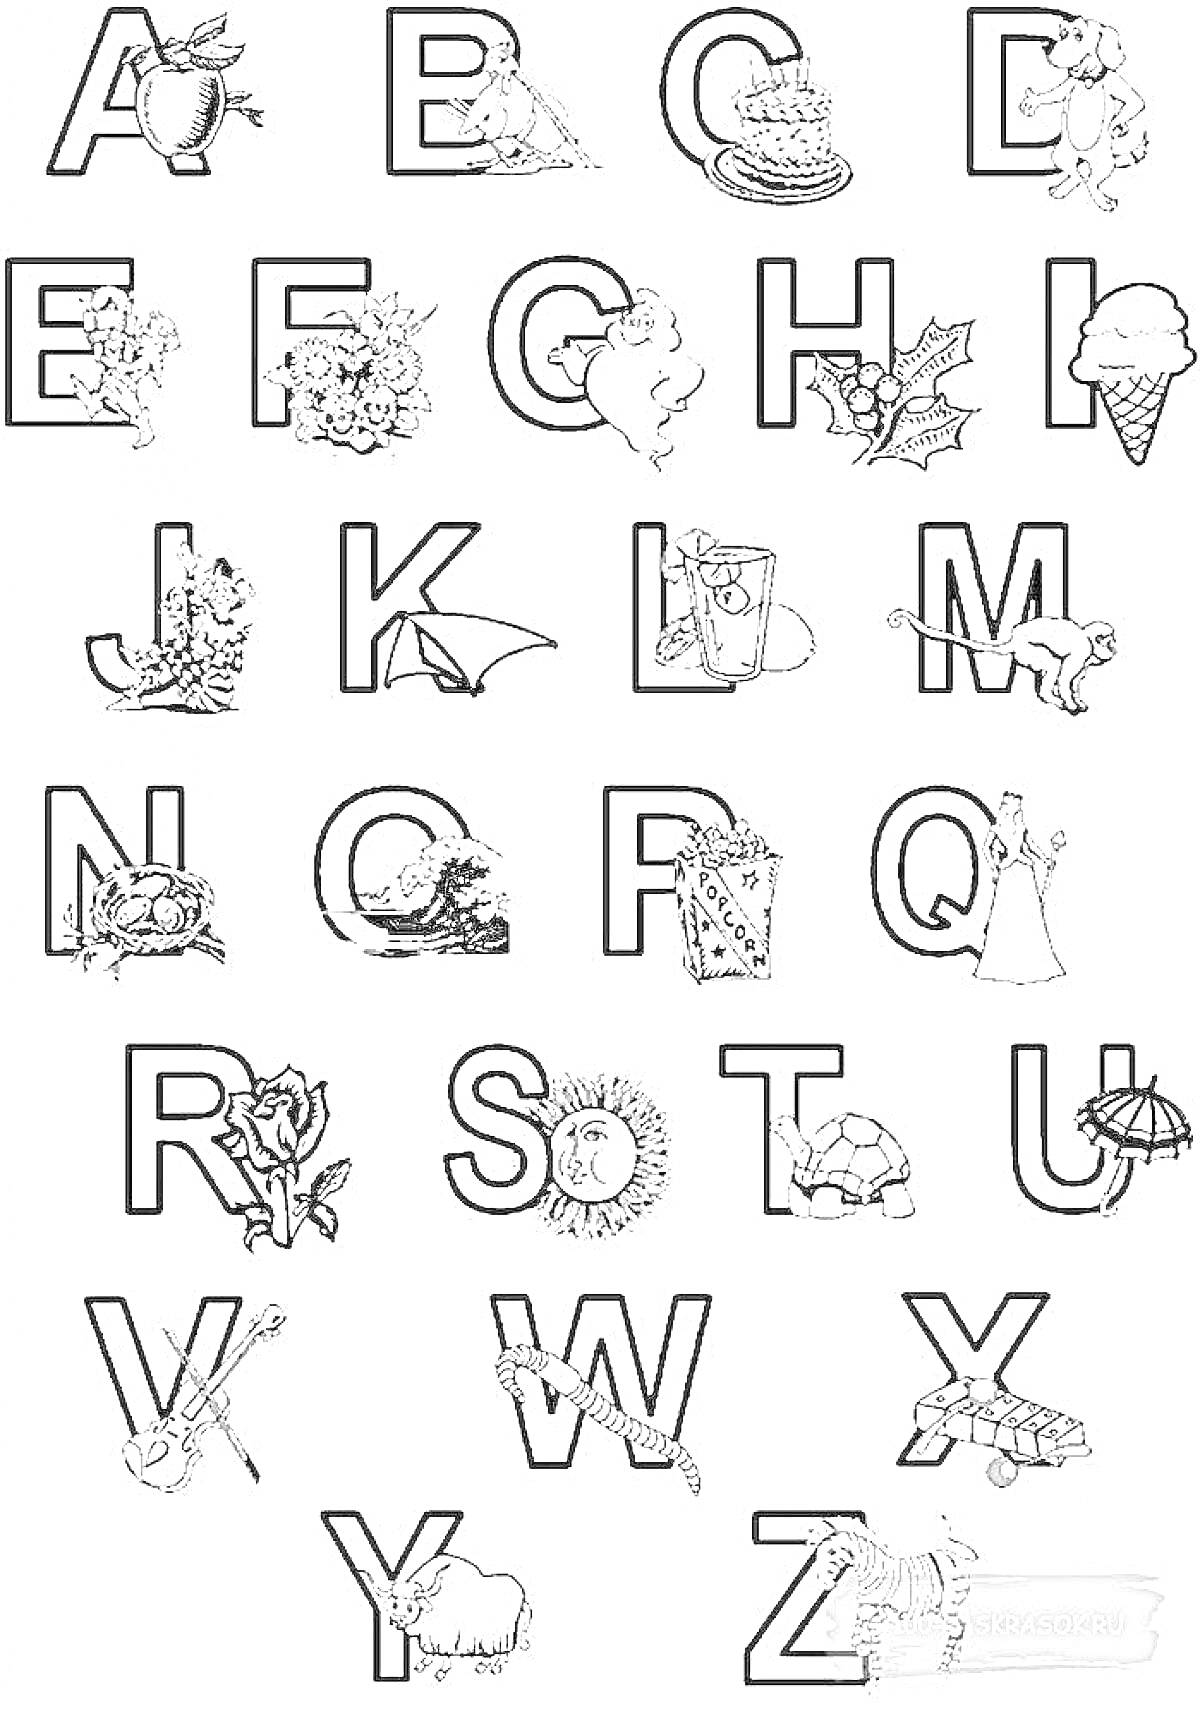 Раскраска Алфавит с изображениями фруктов, животных и предметов, начинающихся на соответствующие буквы.